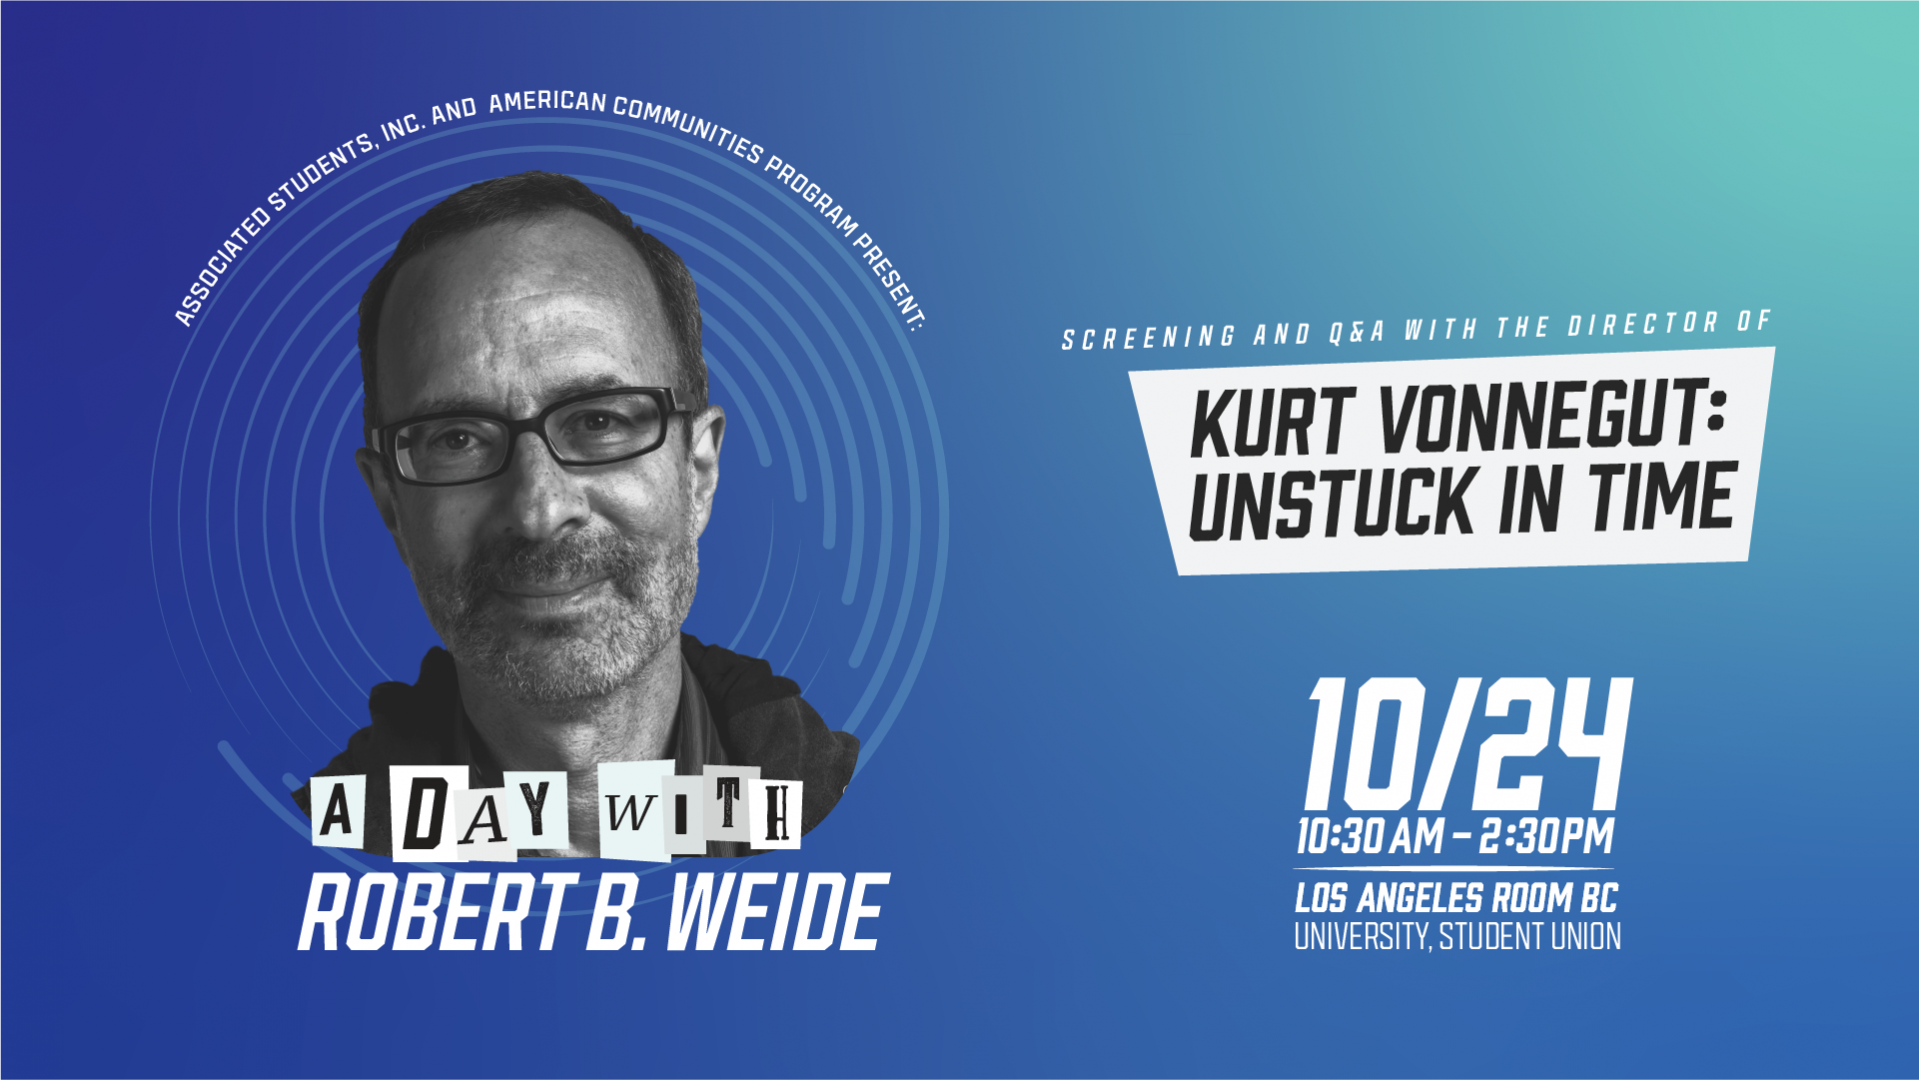 A Day with Robert B Weide - Screening and Q&A Kurt Vonnegut: Unstuck in Time